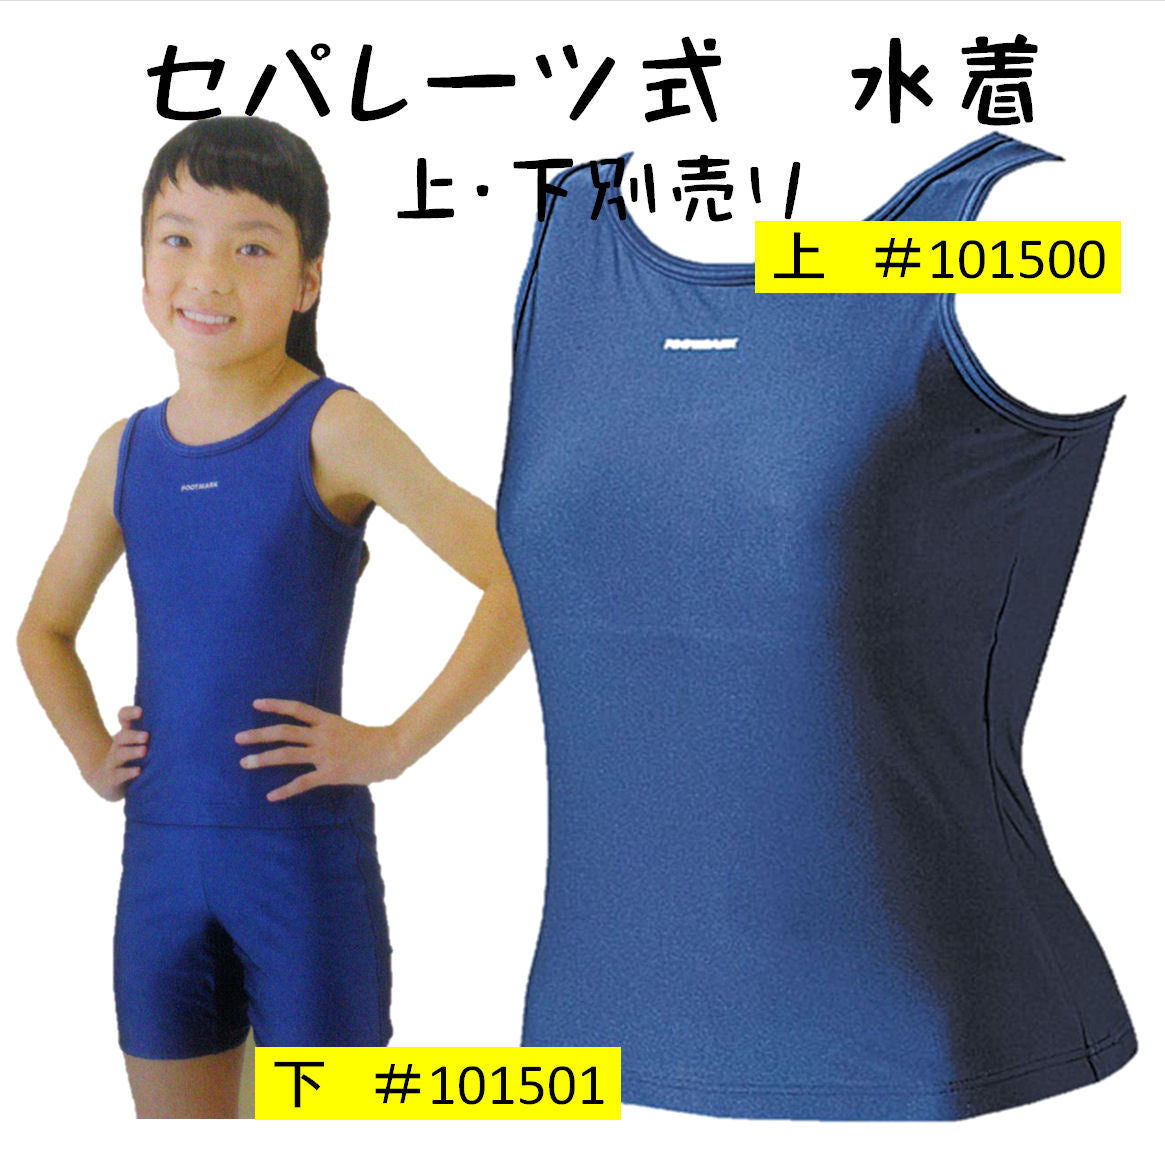 【フットマーク】セパレーツスクール水着 上 101500 紺 競泳型 女子120サイズ 小中学生用 日本製 水泳用品